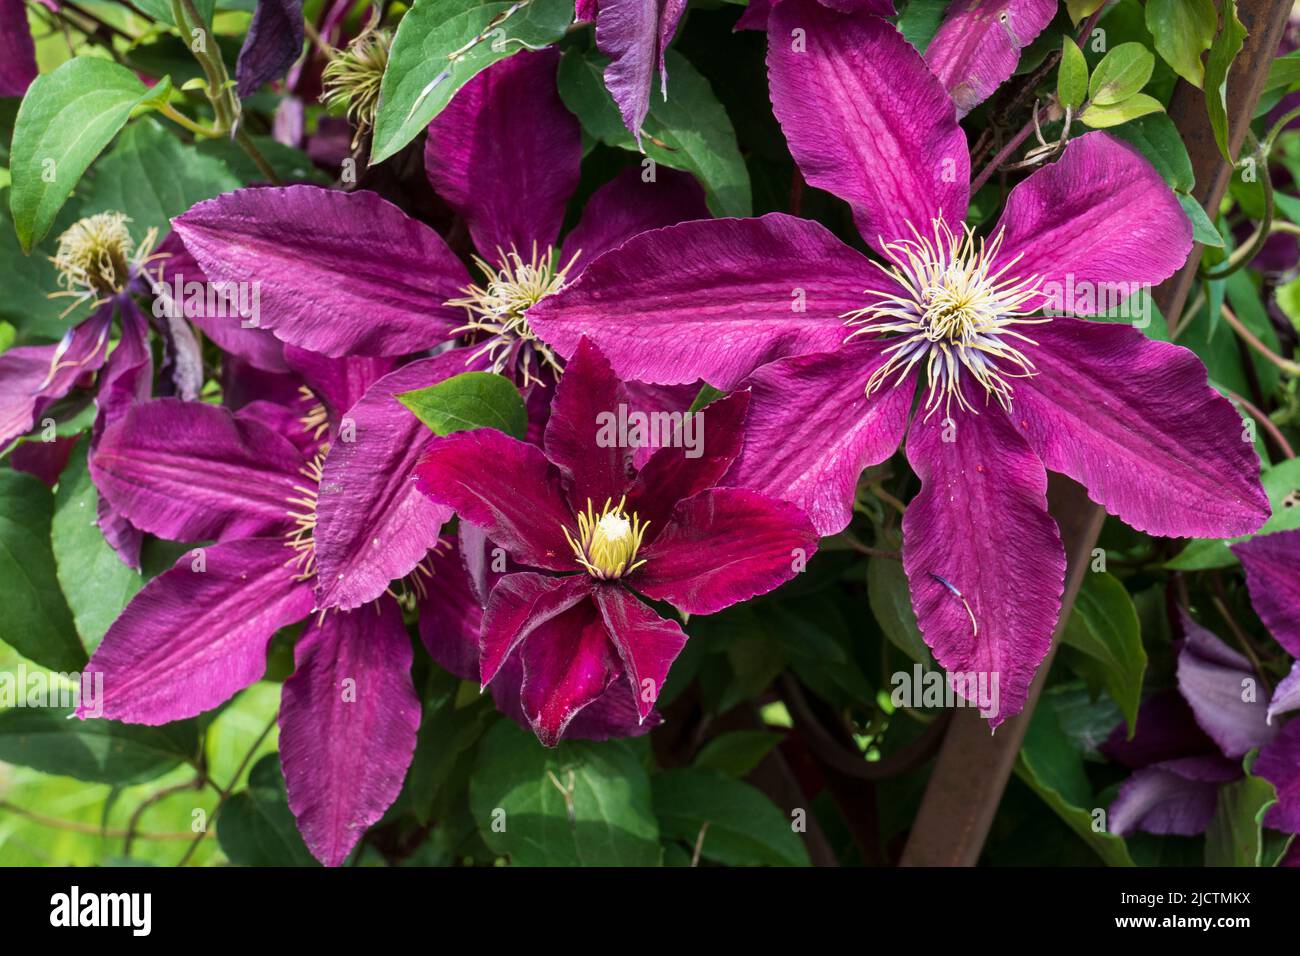 Violett farbene Clematis, Waldrebe Blüten wachsen an einem Holzbogen Stock Photo